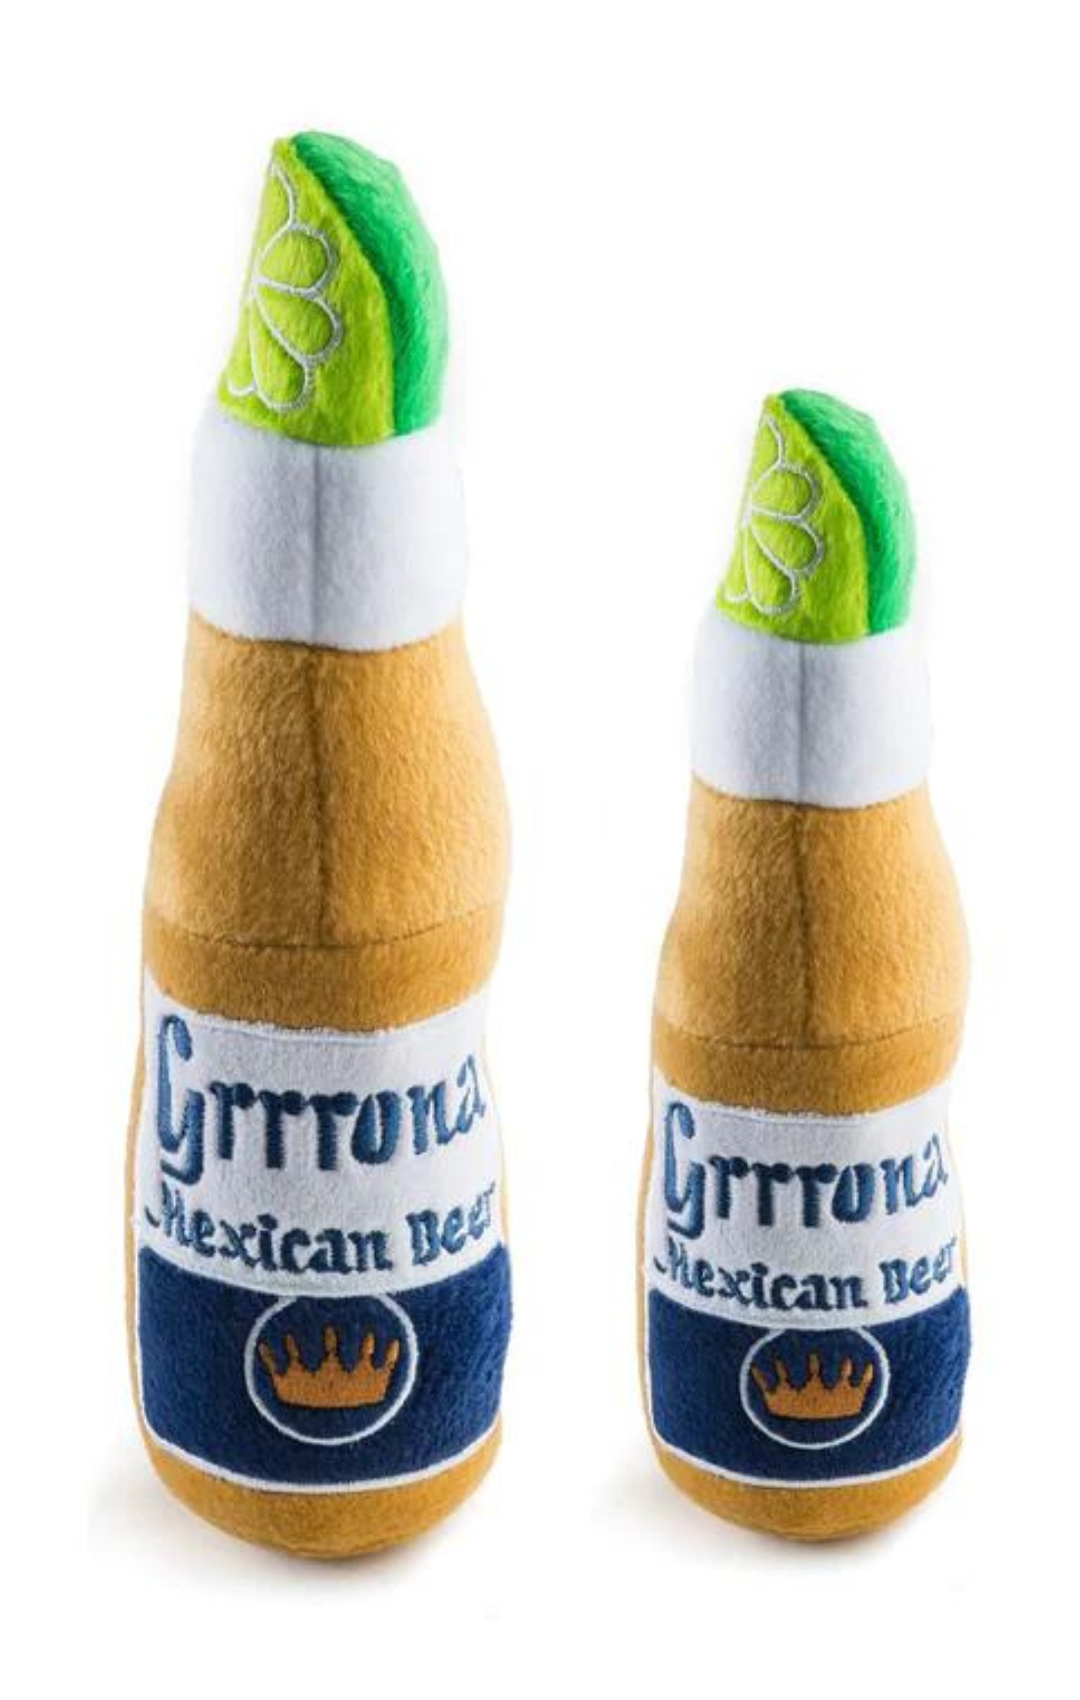 XLarge Grrrona Beer Bottle Dog Toy